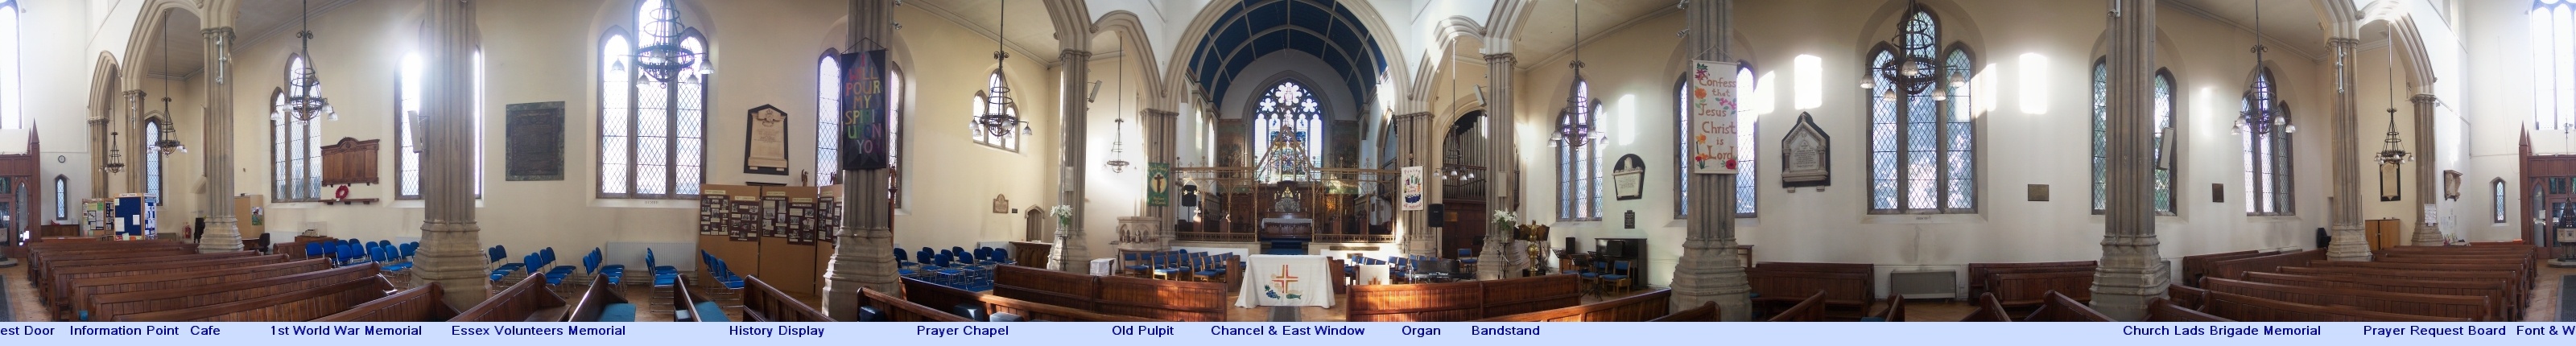 Panorama of St John's Interior